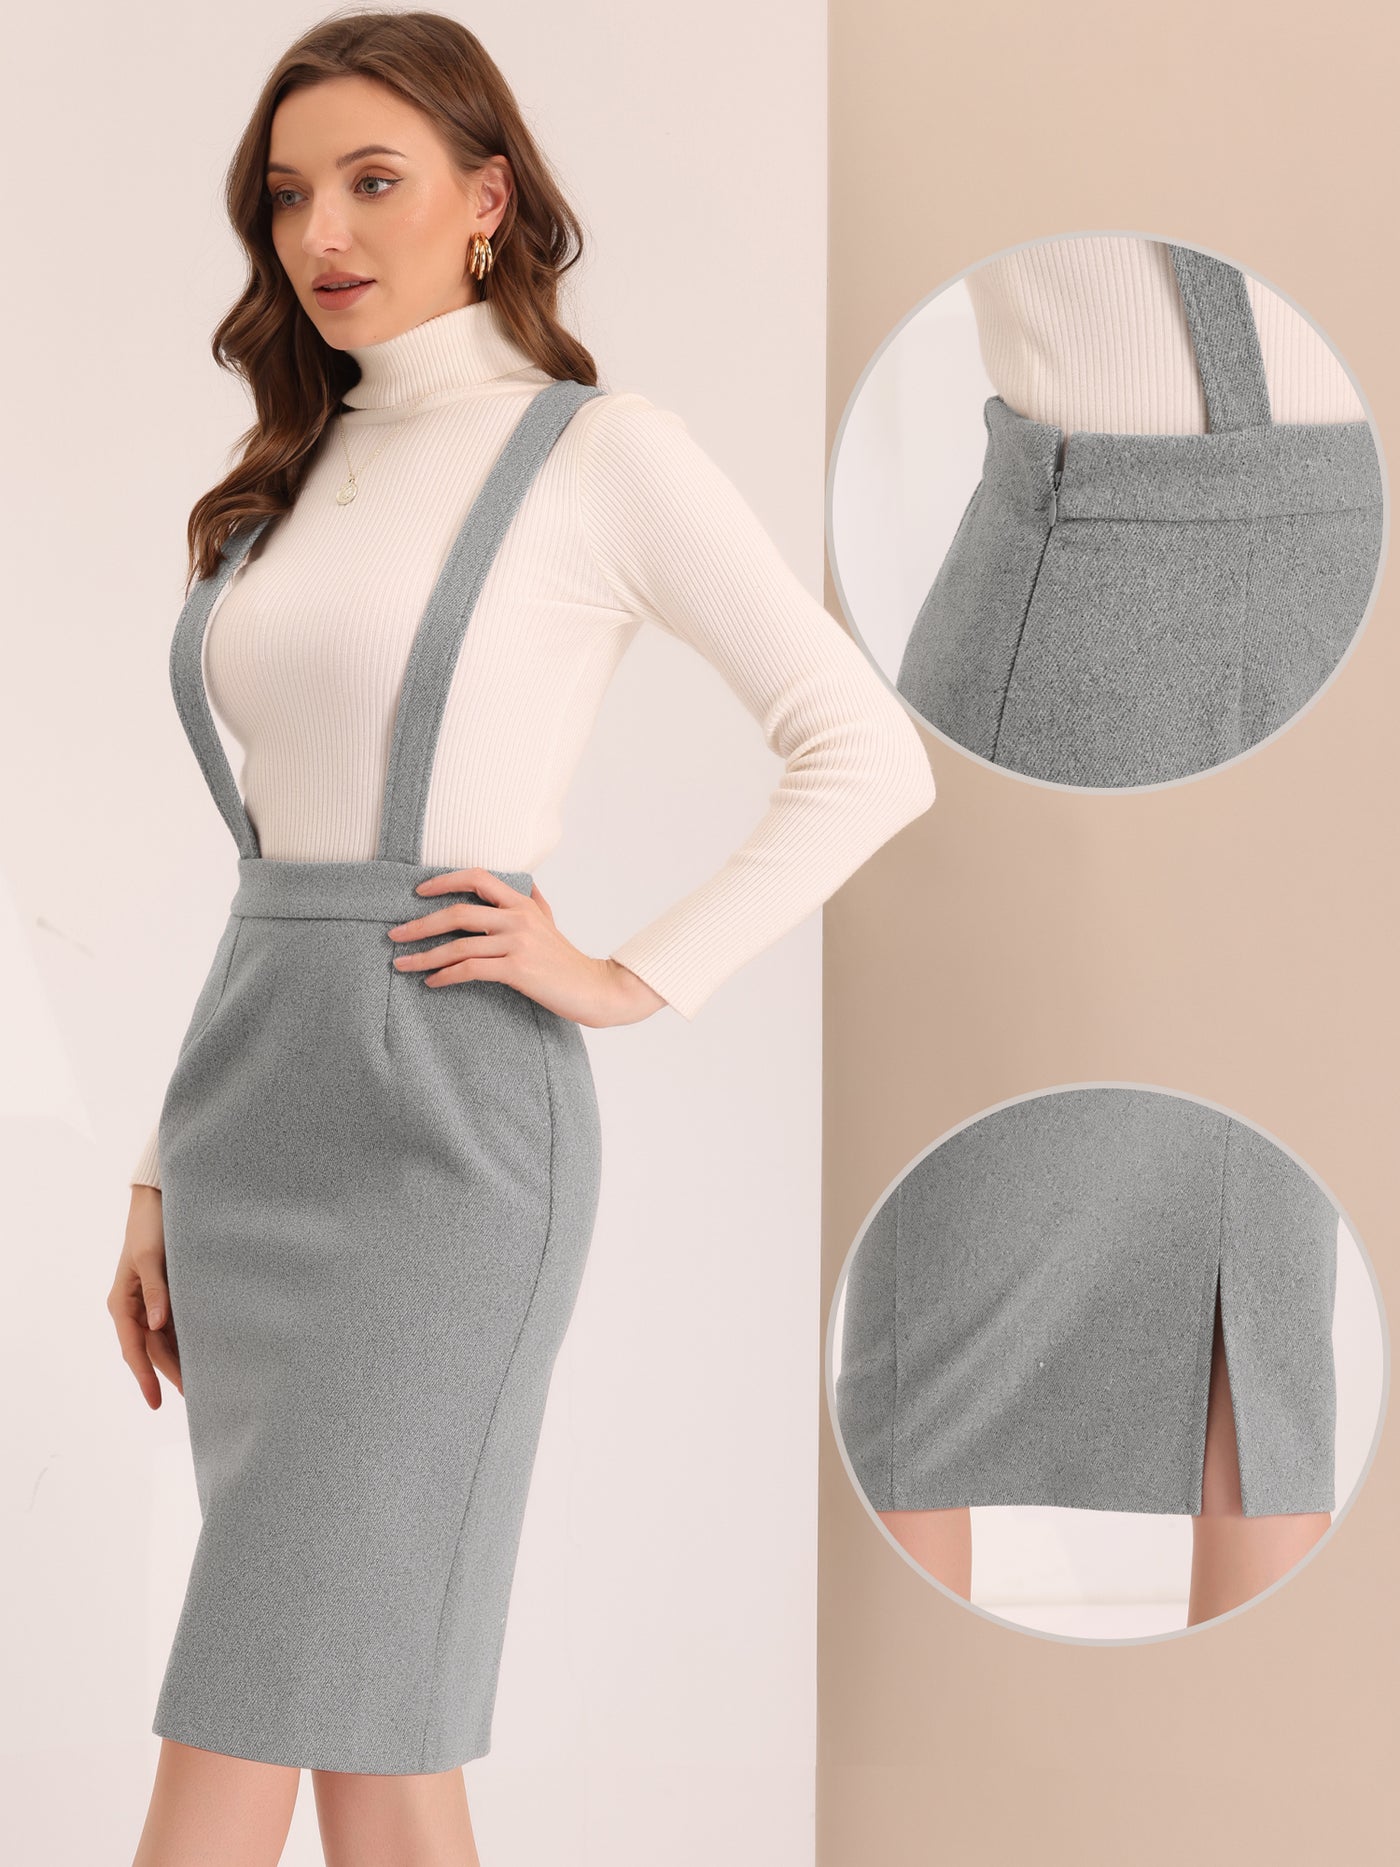 Allegra K Pencil Skirt for Women's High Waist Adjustable Strap Split Back Bodycon Suspender Skirts